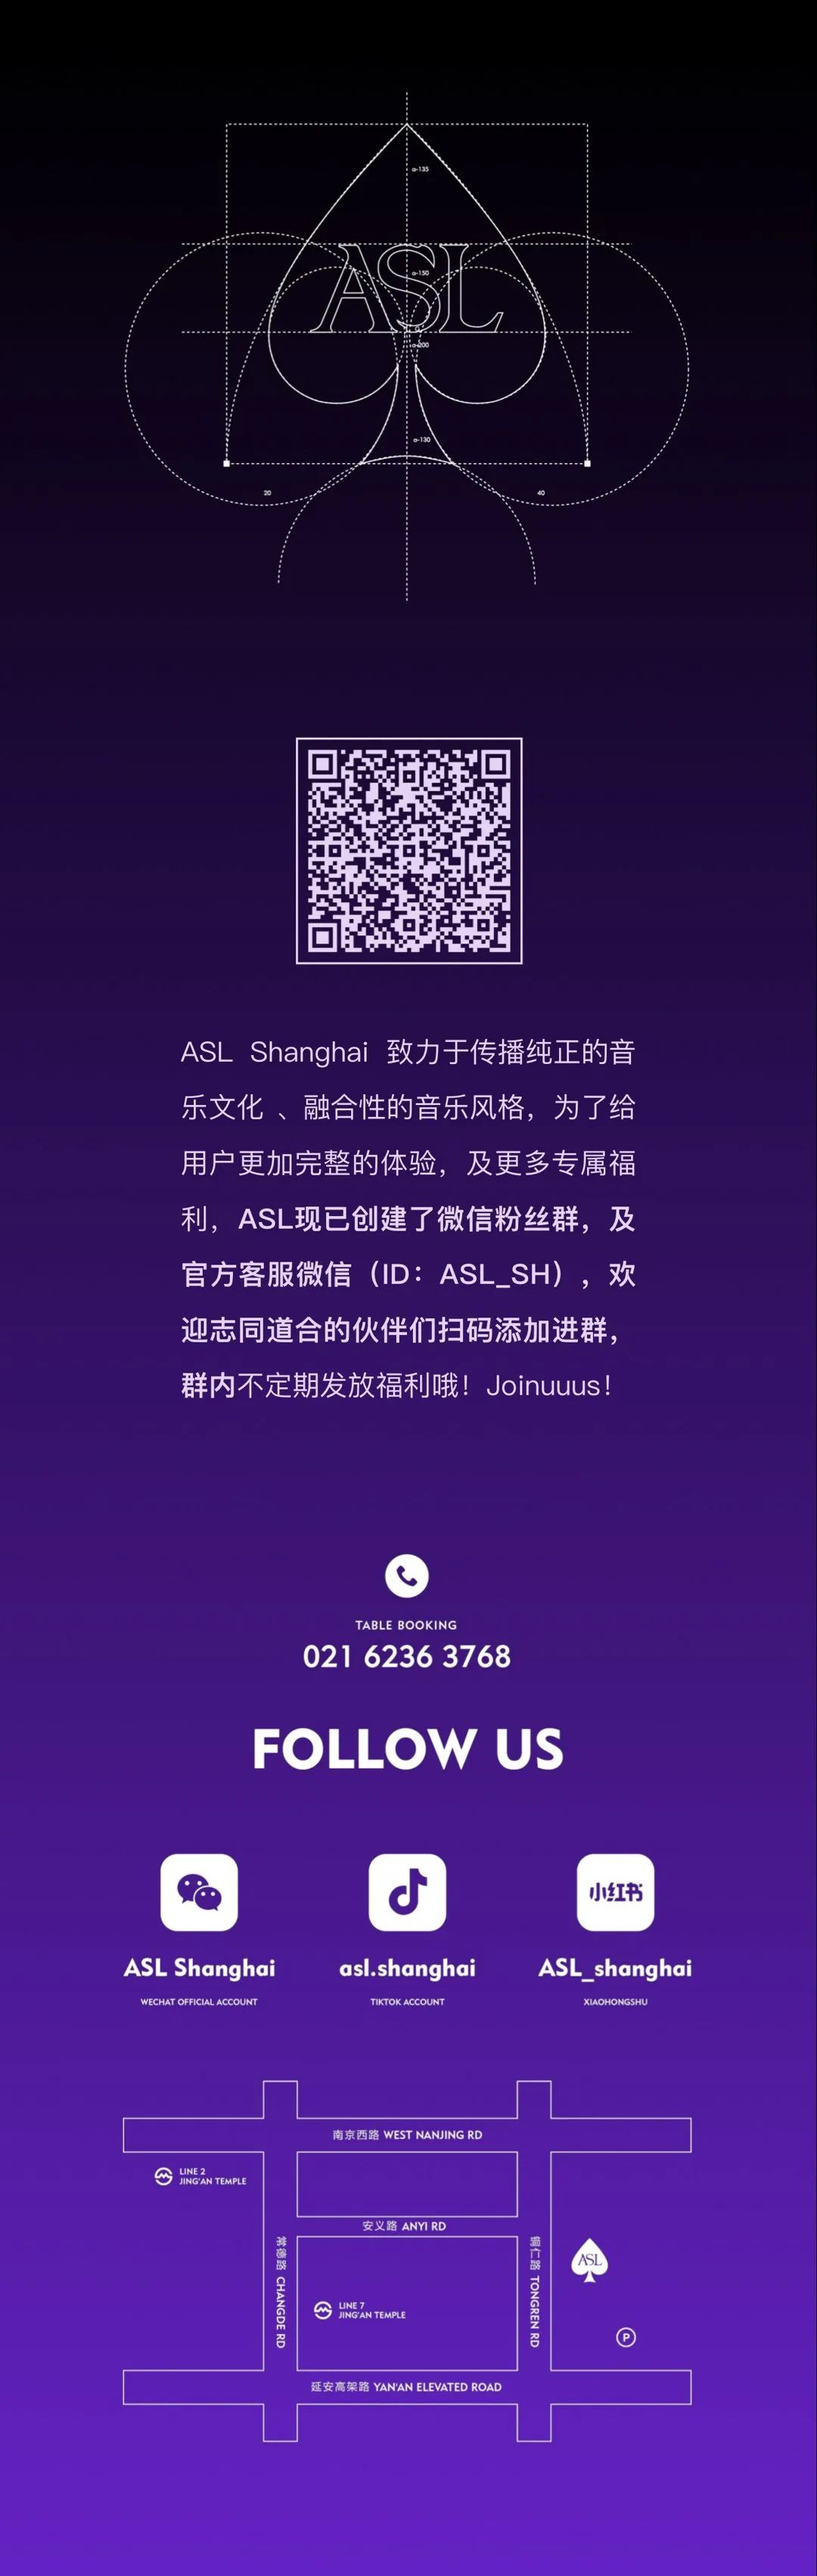 ASL Recap｜See you soon again-上海ASL酒吧/ASL Club